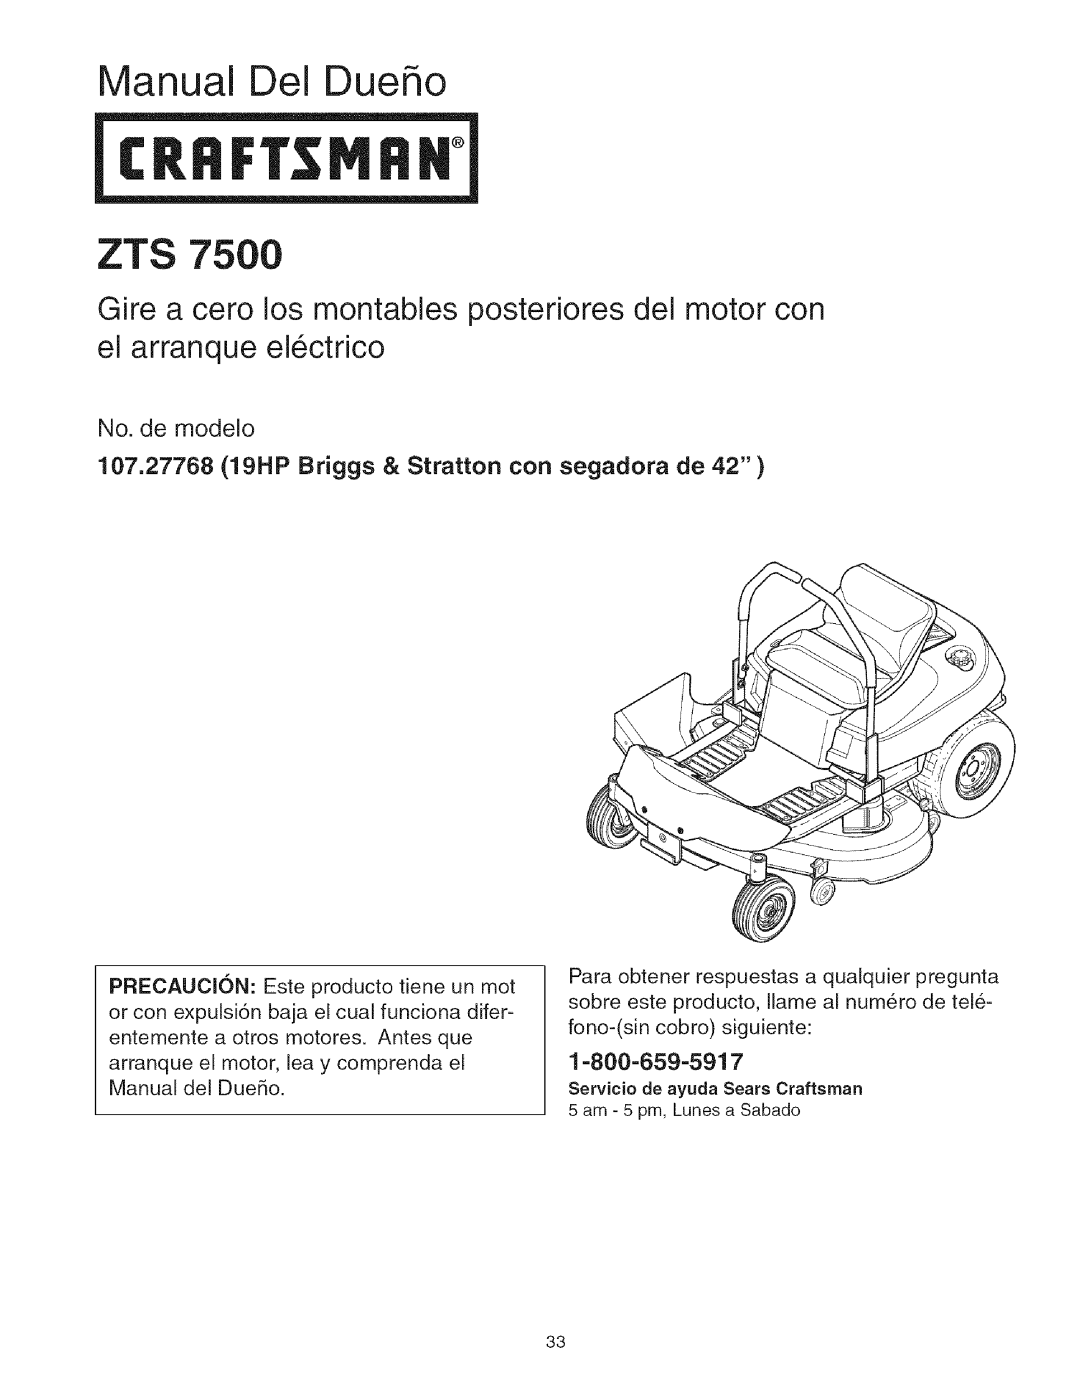 Craftsman manual Manual Del Dueho, No. de modelo, 107.27768 19HP Briggs & Stratton con segadora de, 1-800-659-5917 